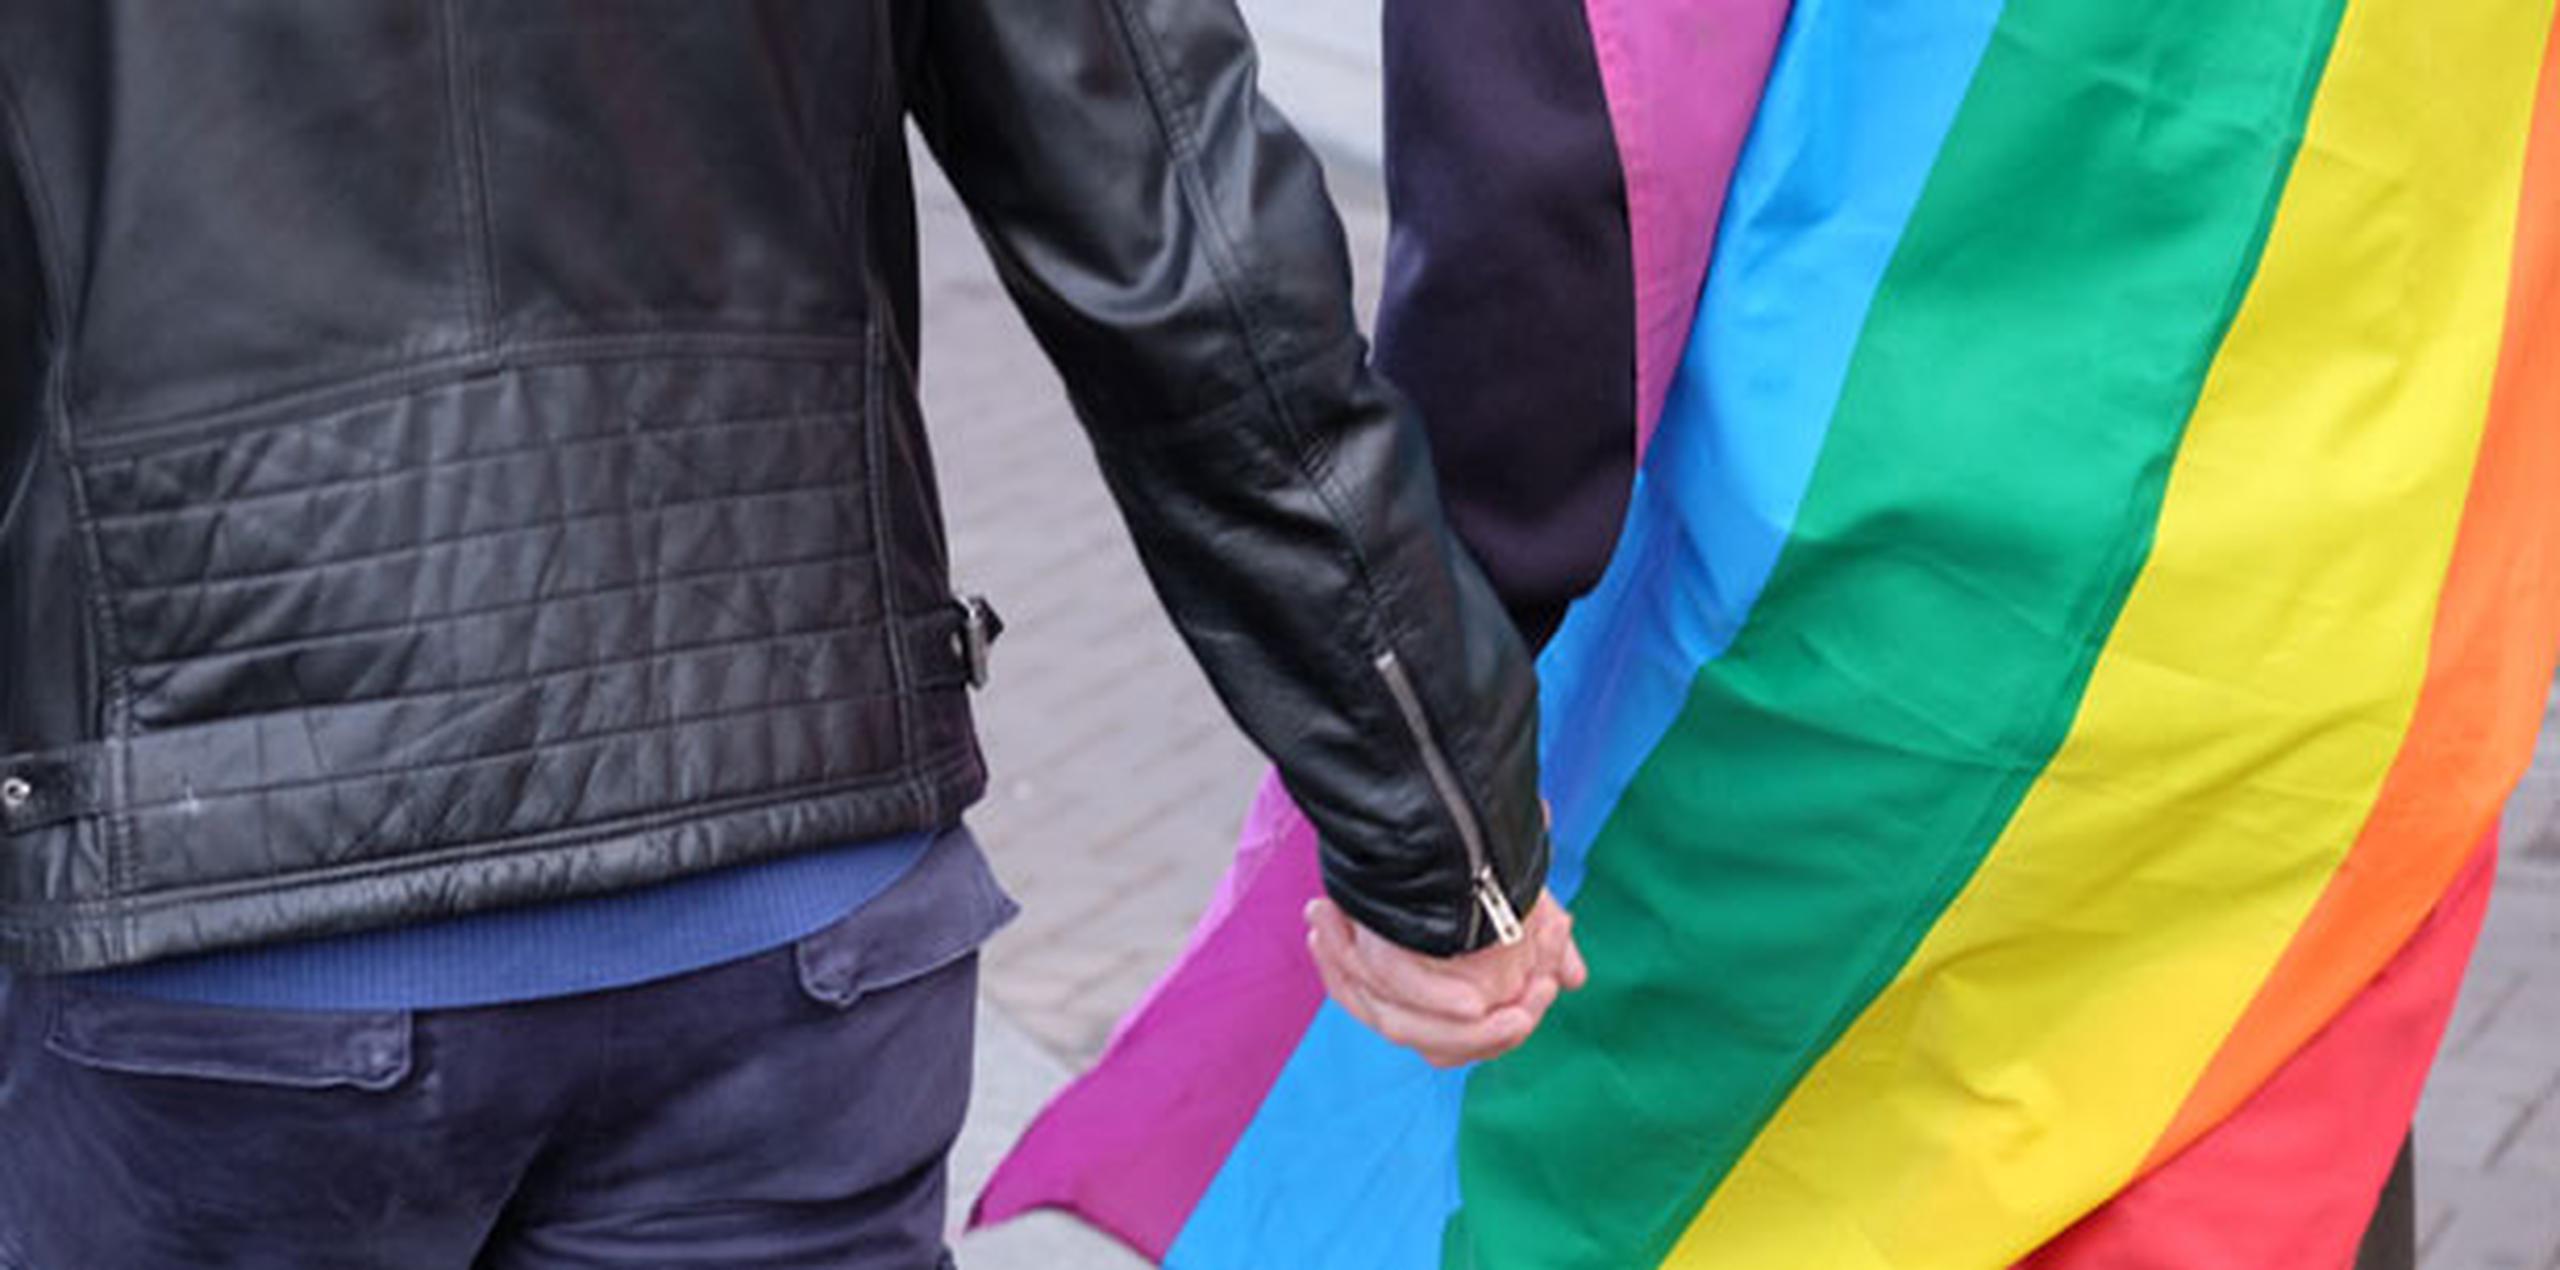 La homosexualidad se despenalizó en Rusia, pero la hostilidad contra las minorías sexuales persiste extensamente. (Archivo)